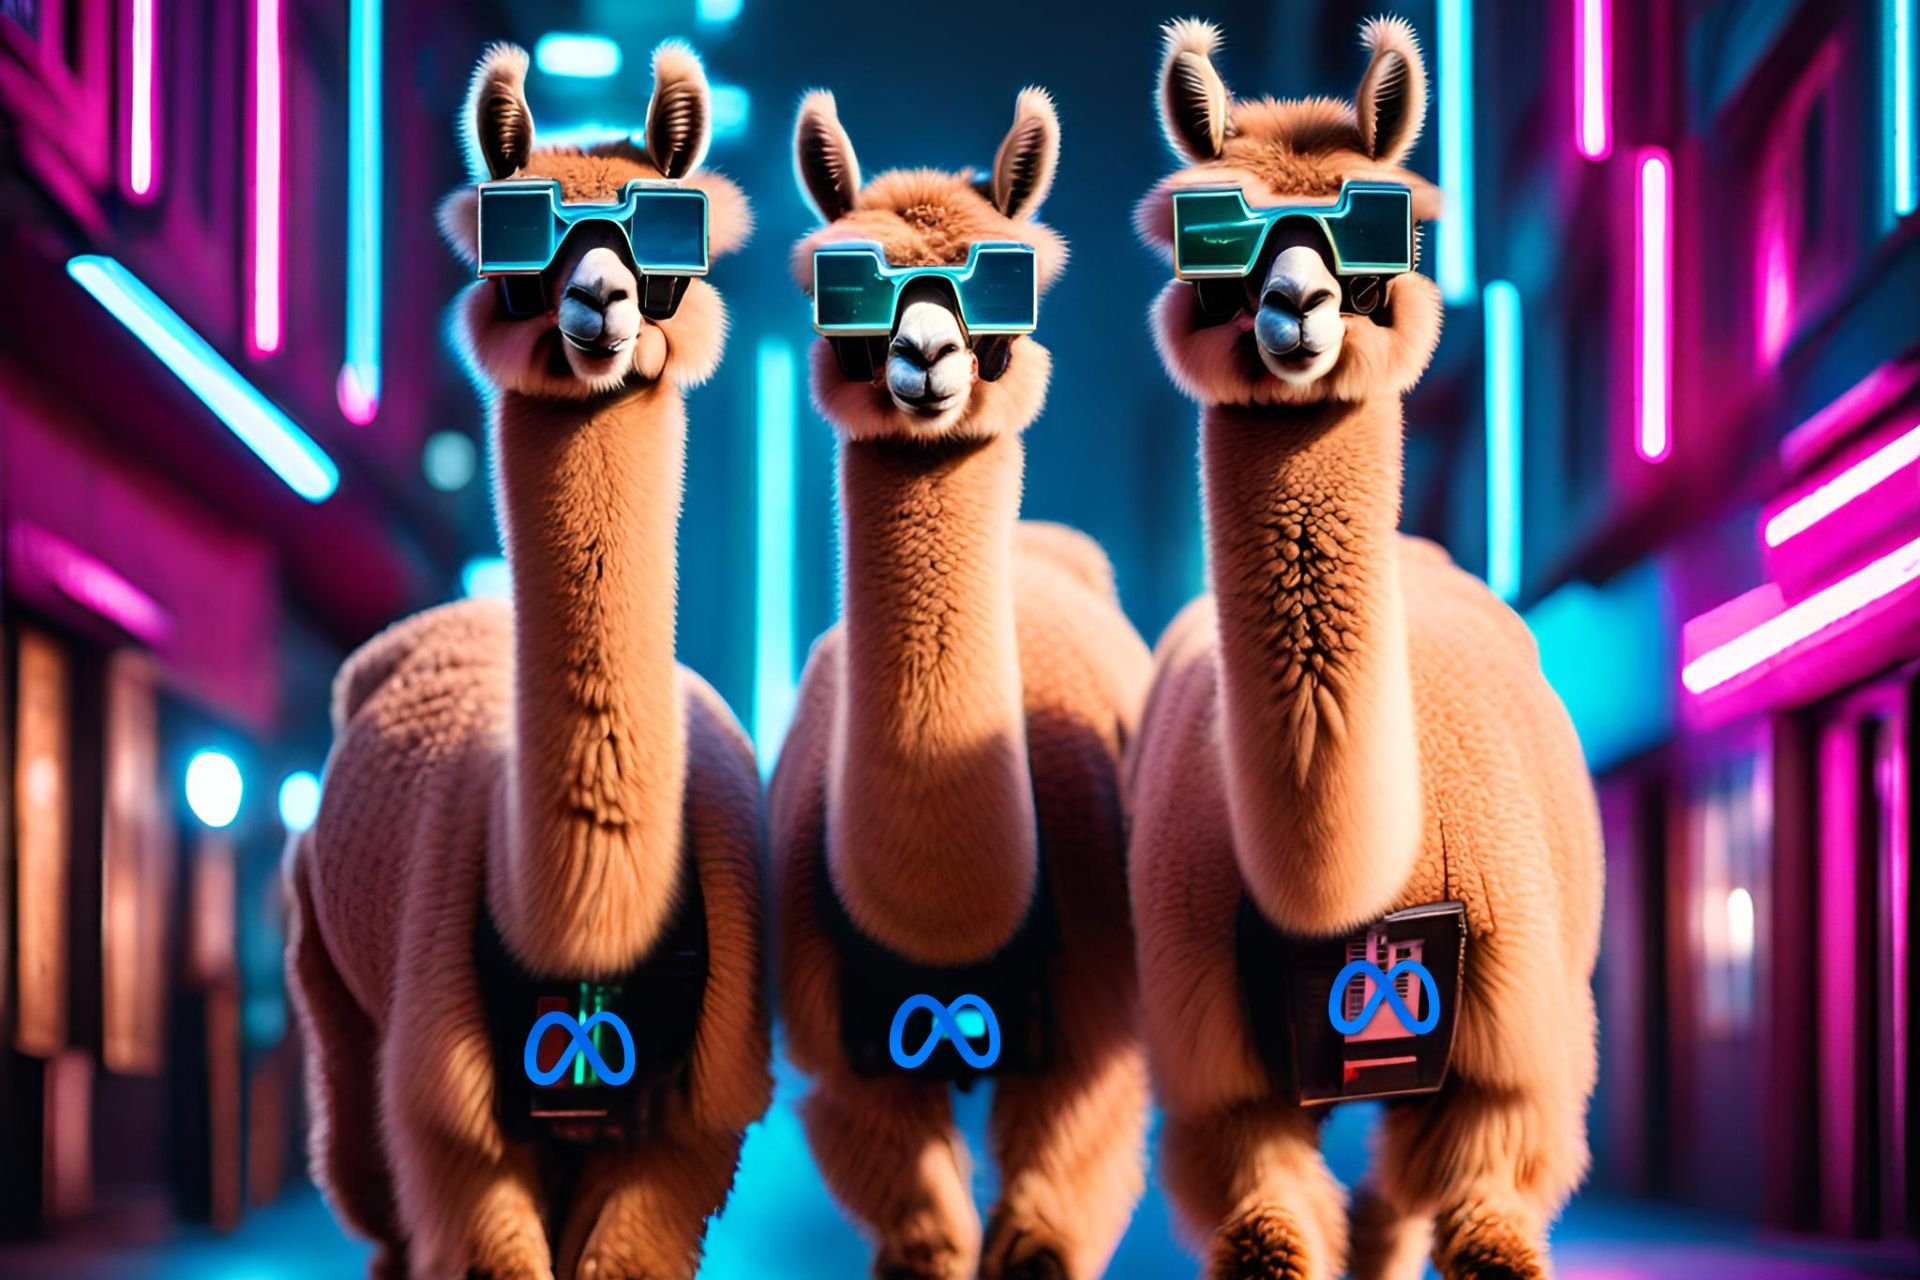 3 Llamas walking through the city at night with AI glasses